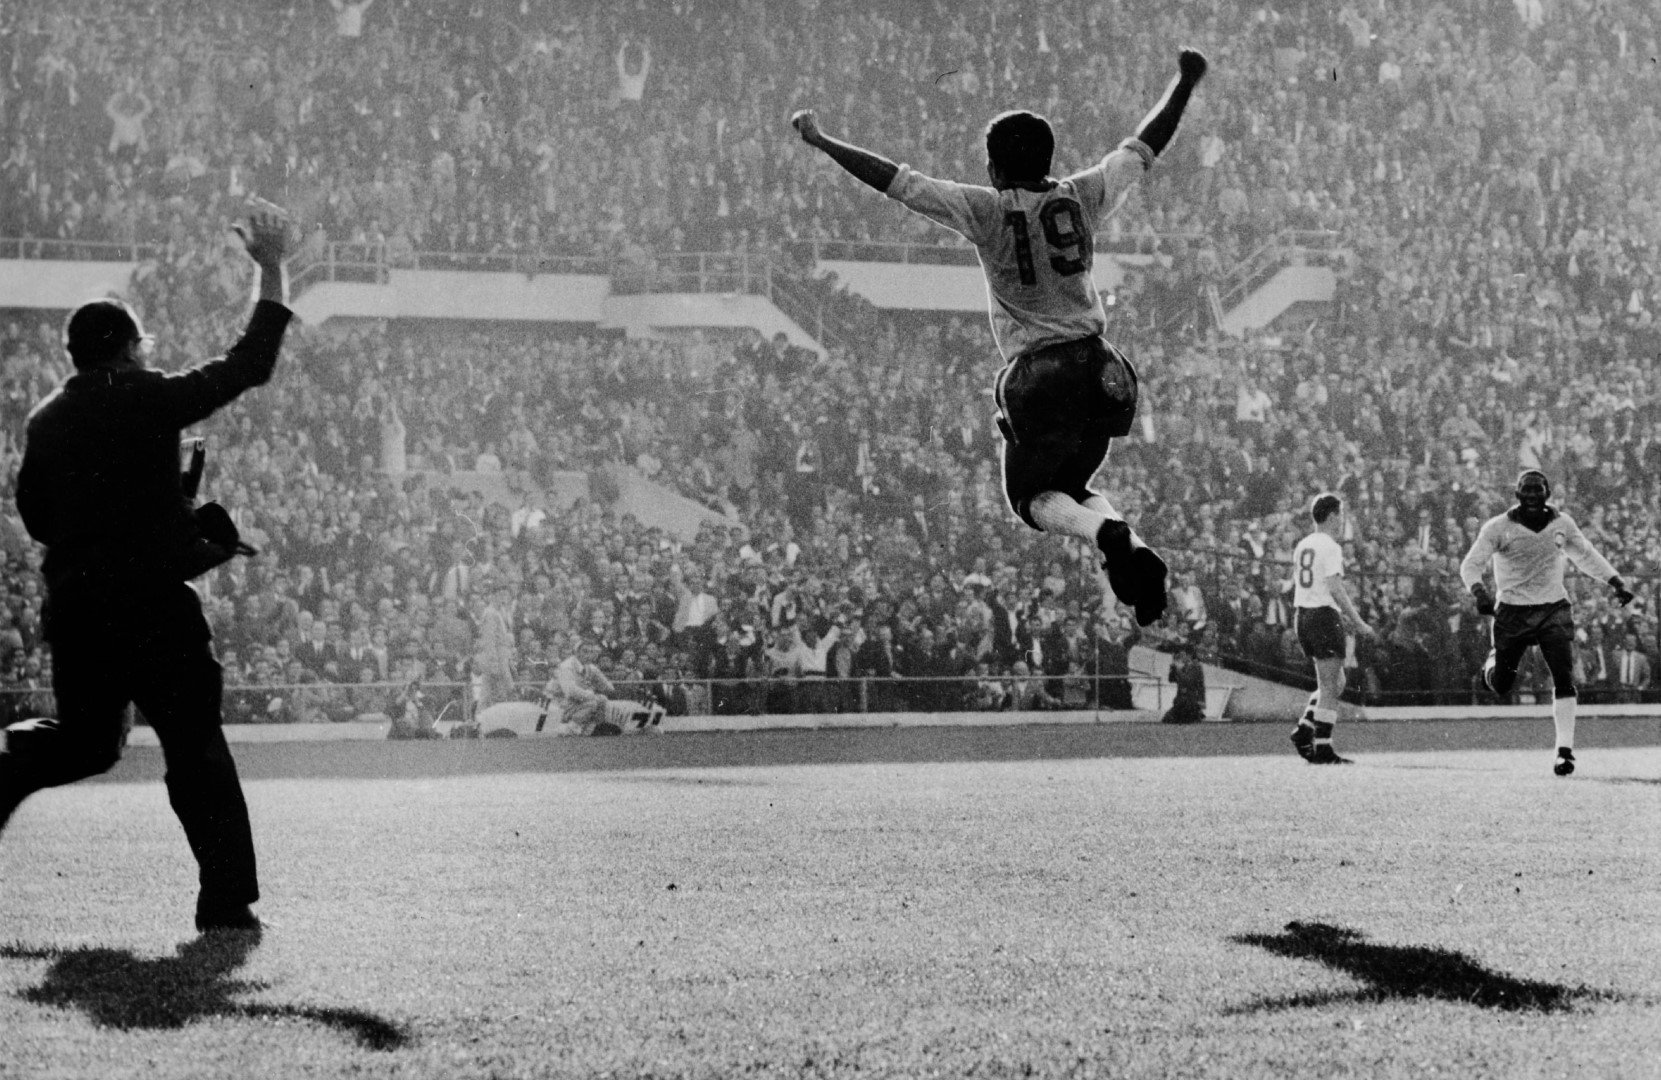 Зито лудее след гола си във вратата на Чехословакия във финала през 1962-ра. Бразилия печели с 3:1 и дублира титлата